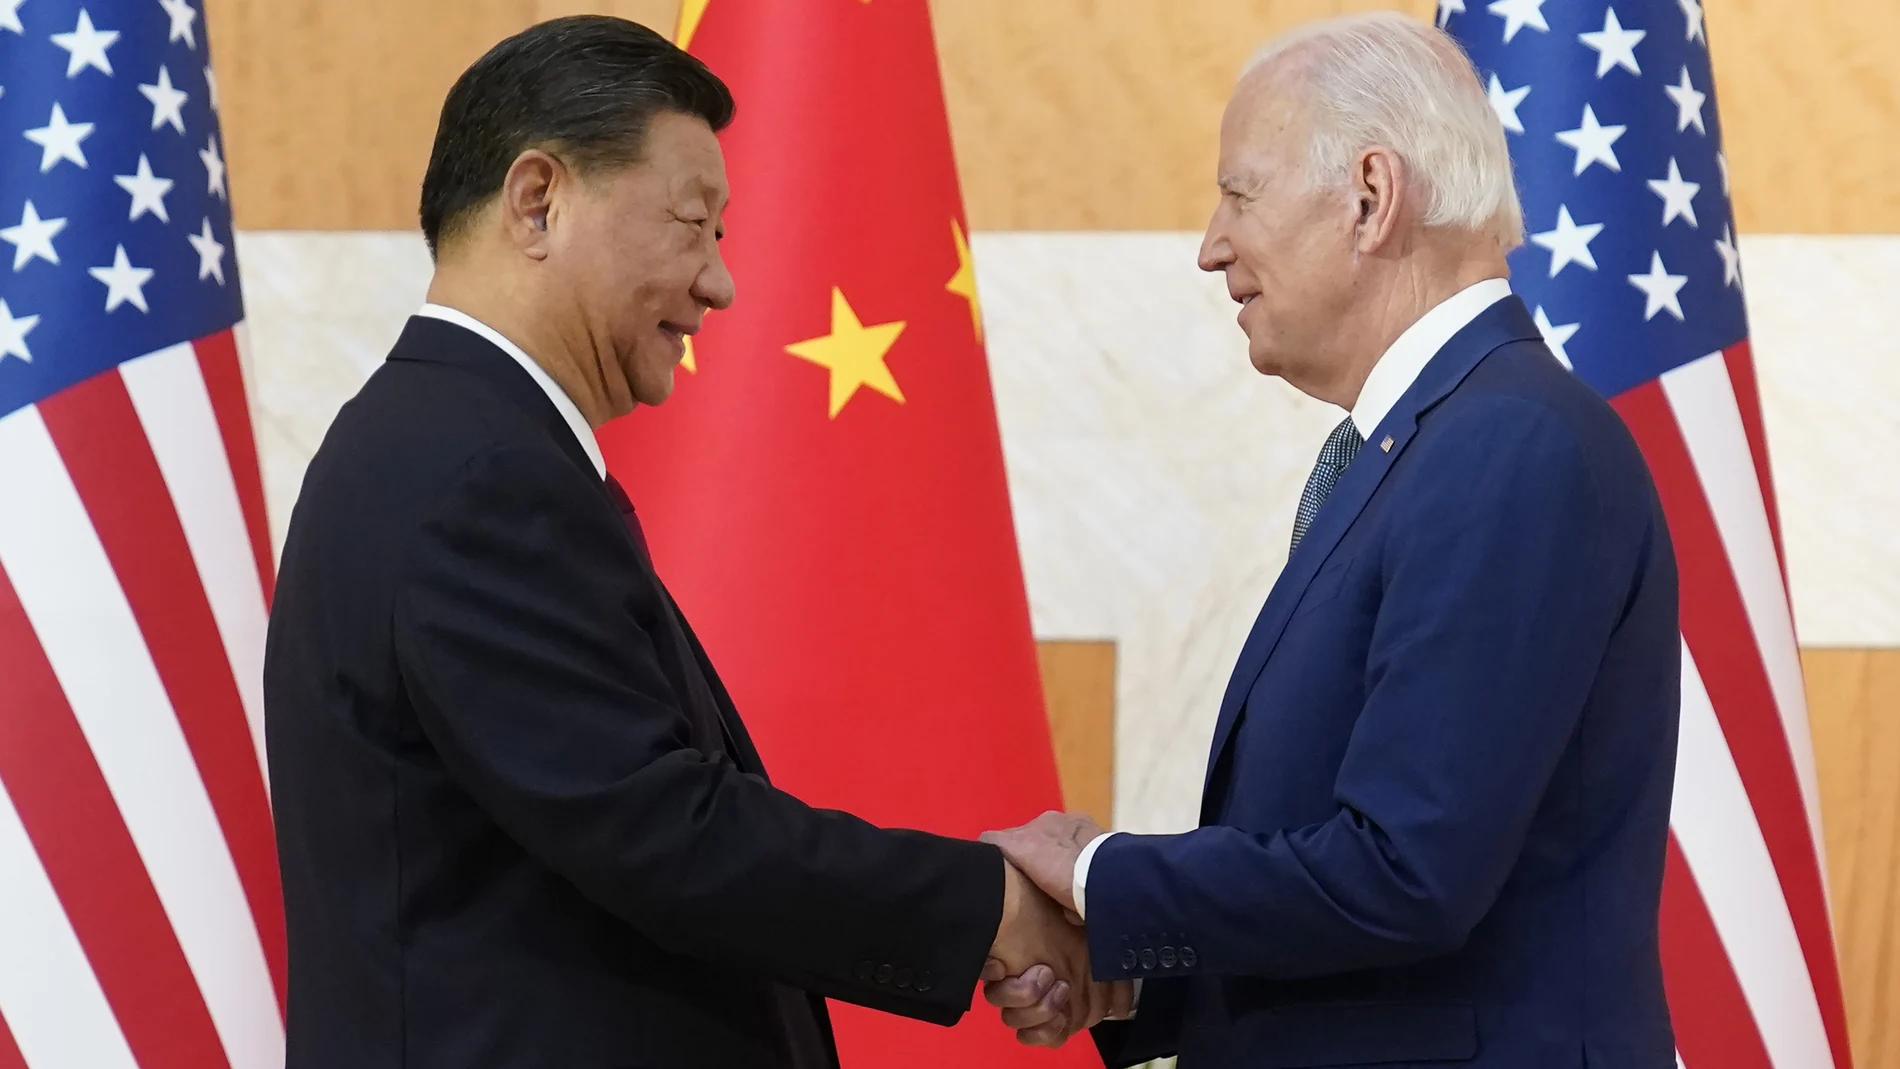 El presidente Joe Biden estrecha la mano a su homólogo chino, Xi Jinping